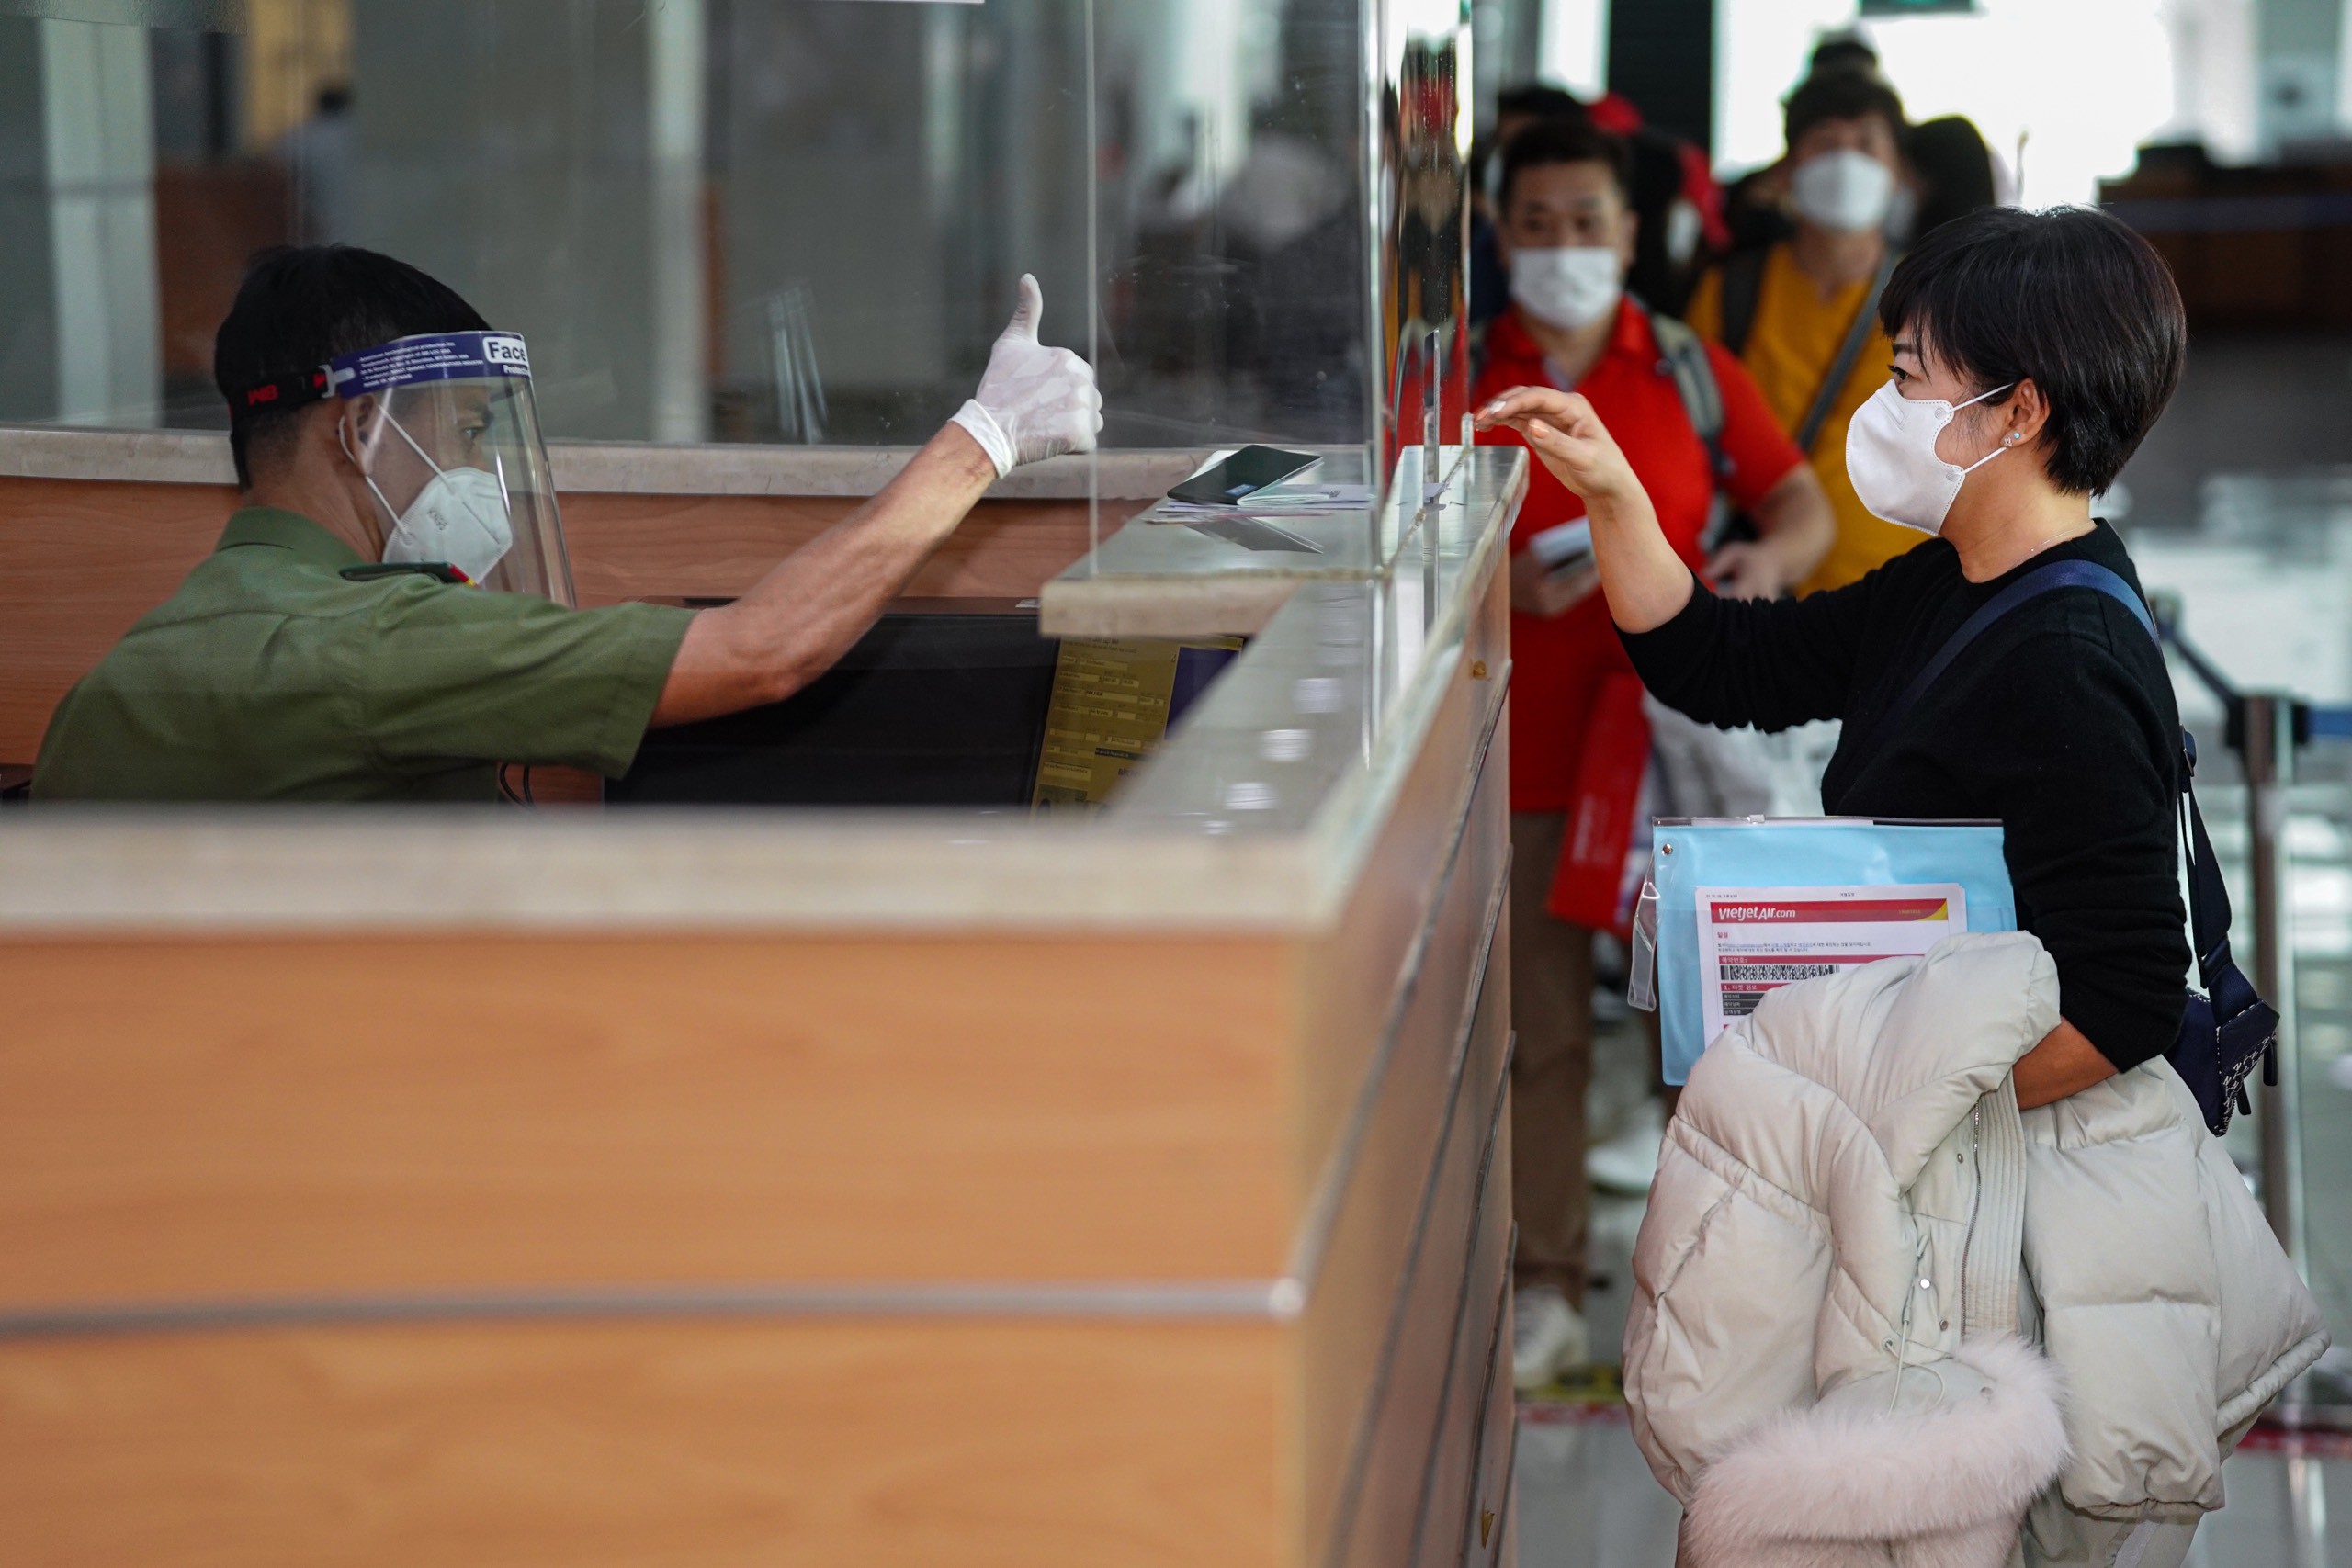 du khach ho chieu vaccine den Phu Quoc anh 7  - vj_phuquoc_zing_10 - Hơn 200 khách Hàn Quốc đến Phú Quốc sau dịch